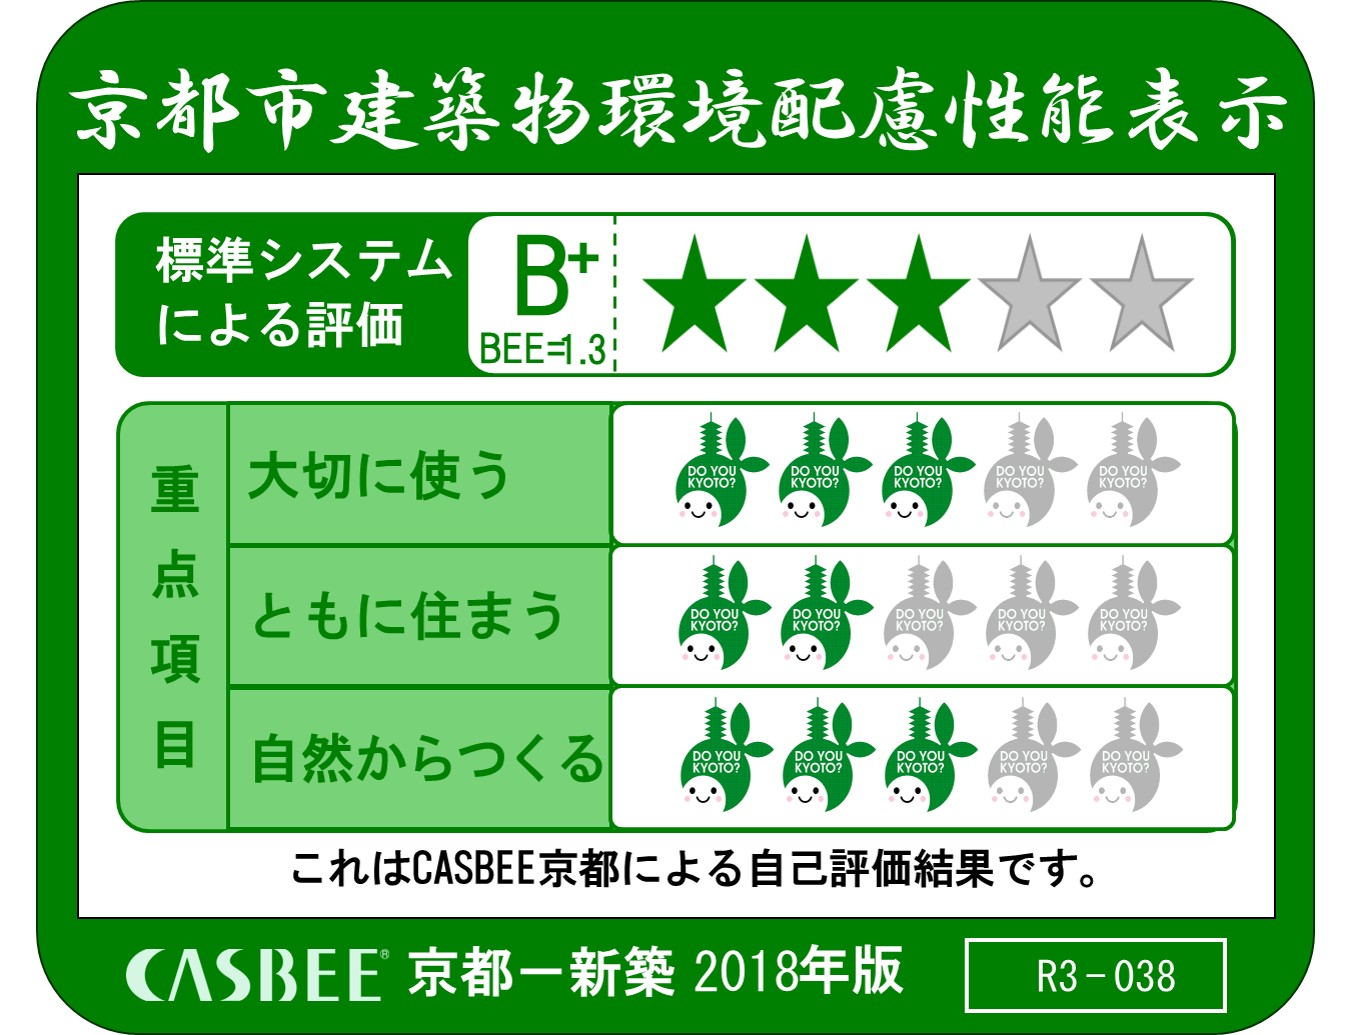 これはCASBEE京都による自己評価結果です。